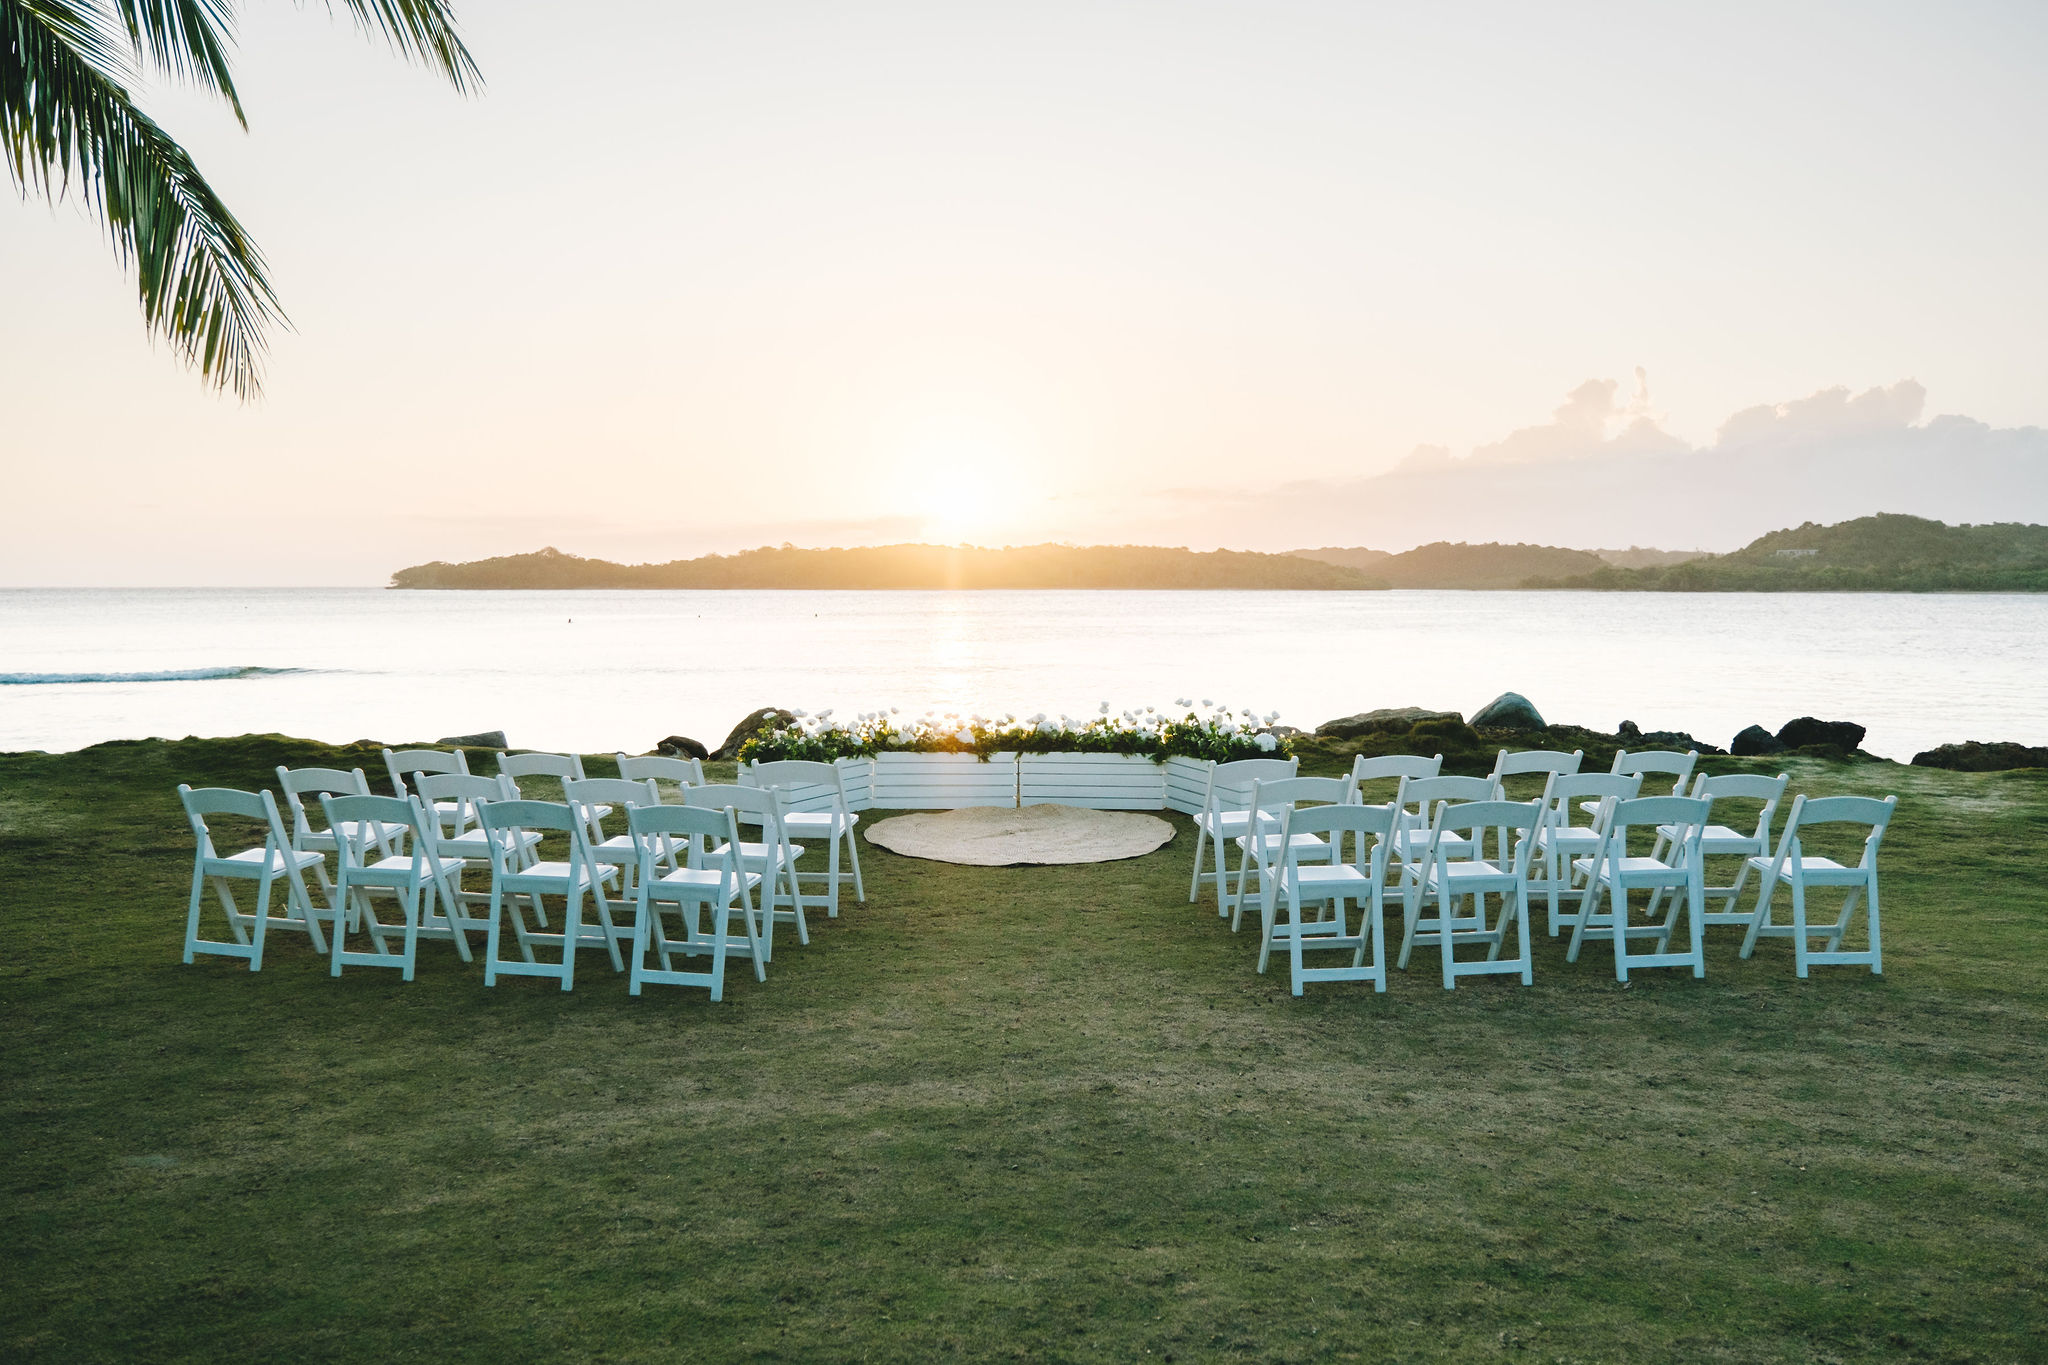 A wedding ceremony in Fiji